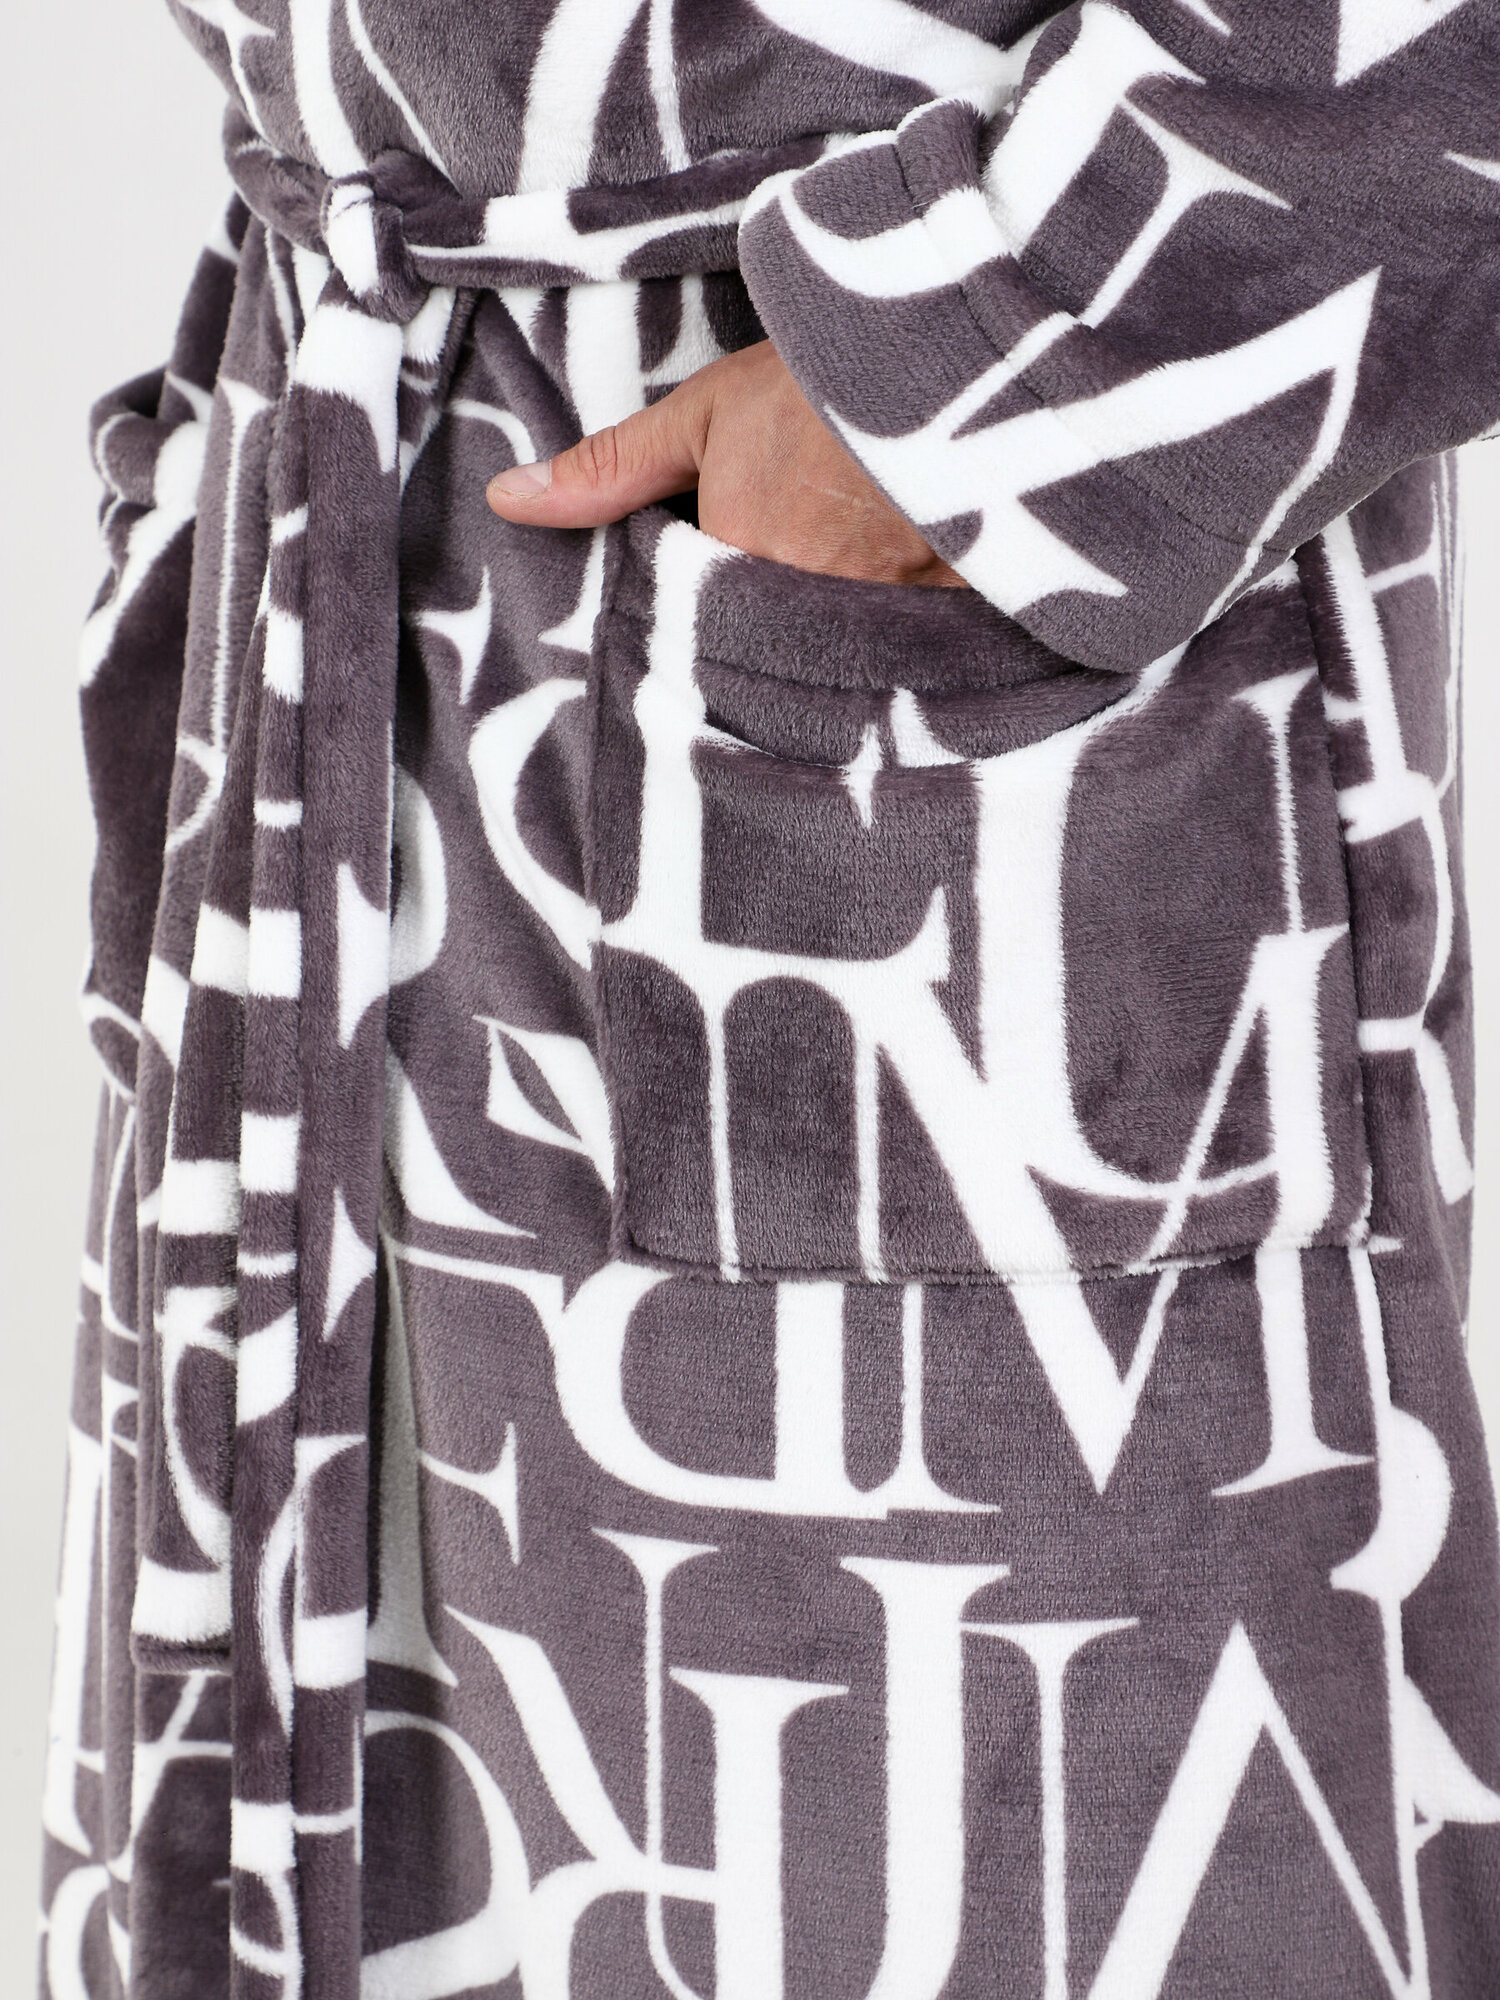 Халат IvCapriz, длинный рукав, пояс/ремень, утепленная, карманы, трикотажная, банный халат, размер 48, белый, коричневый - фотография № 8